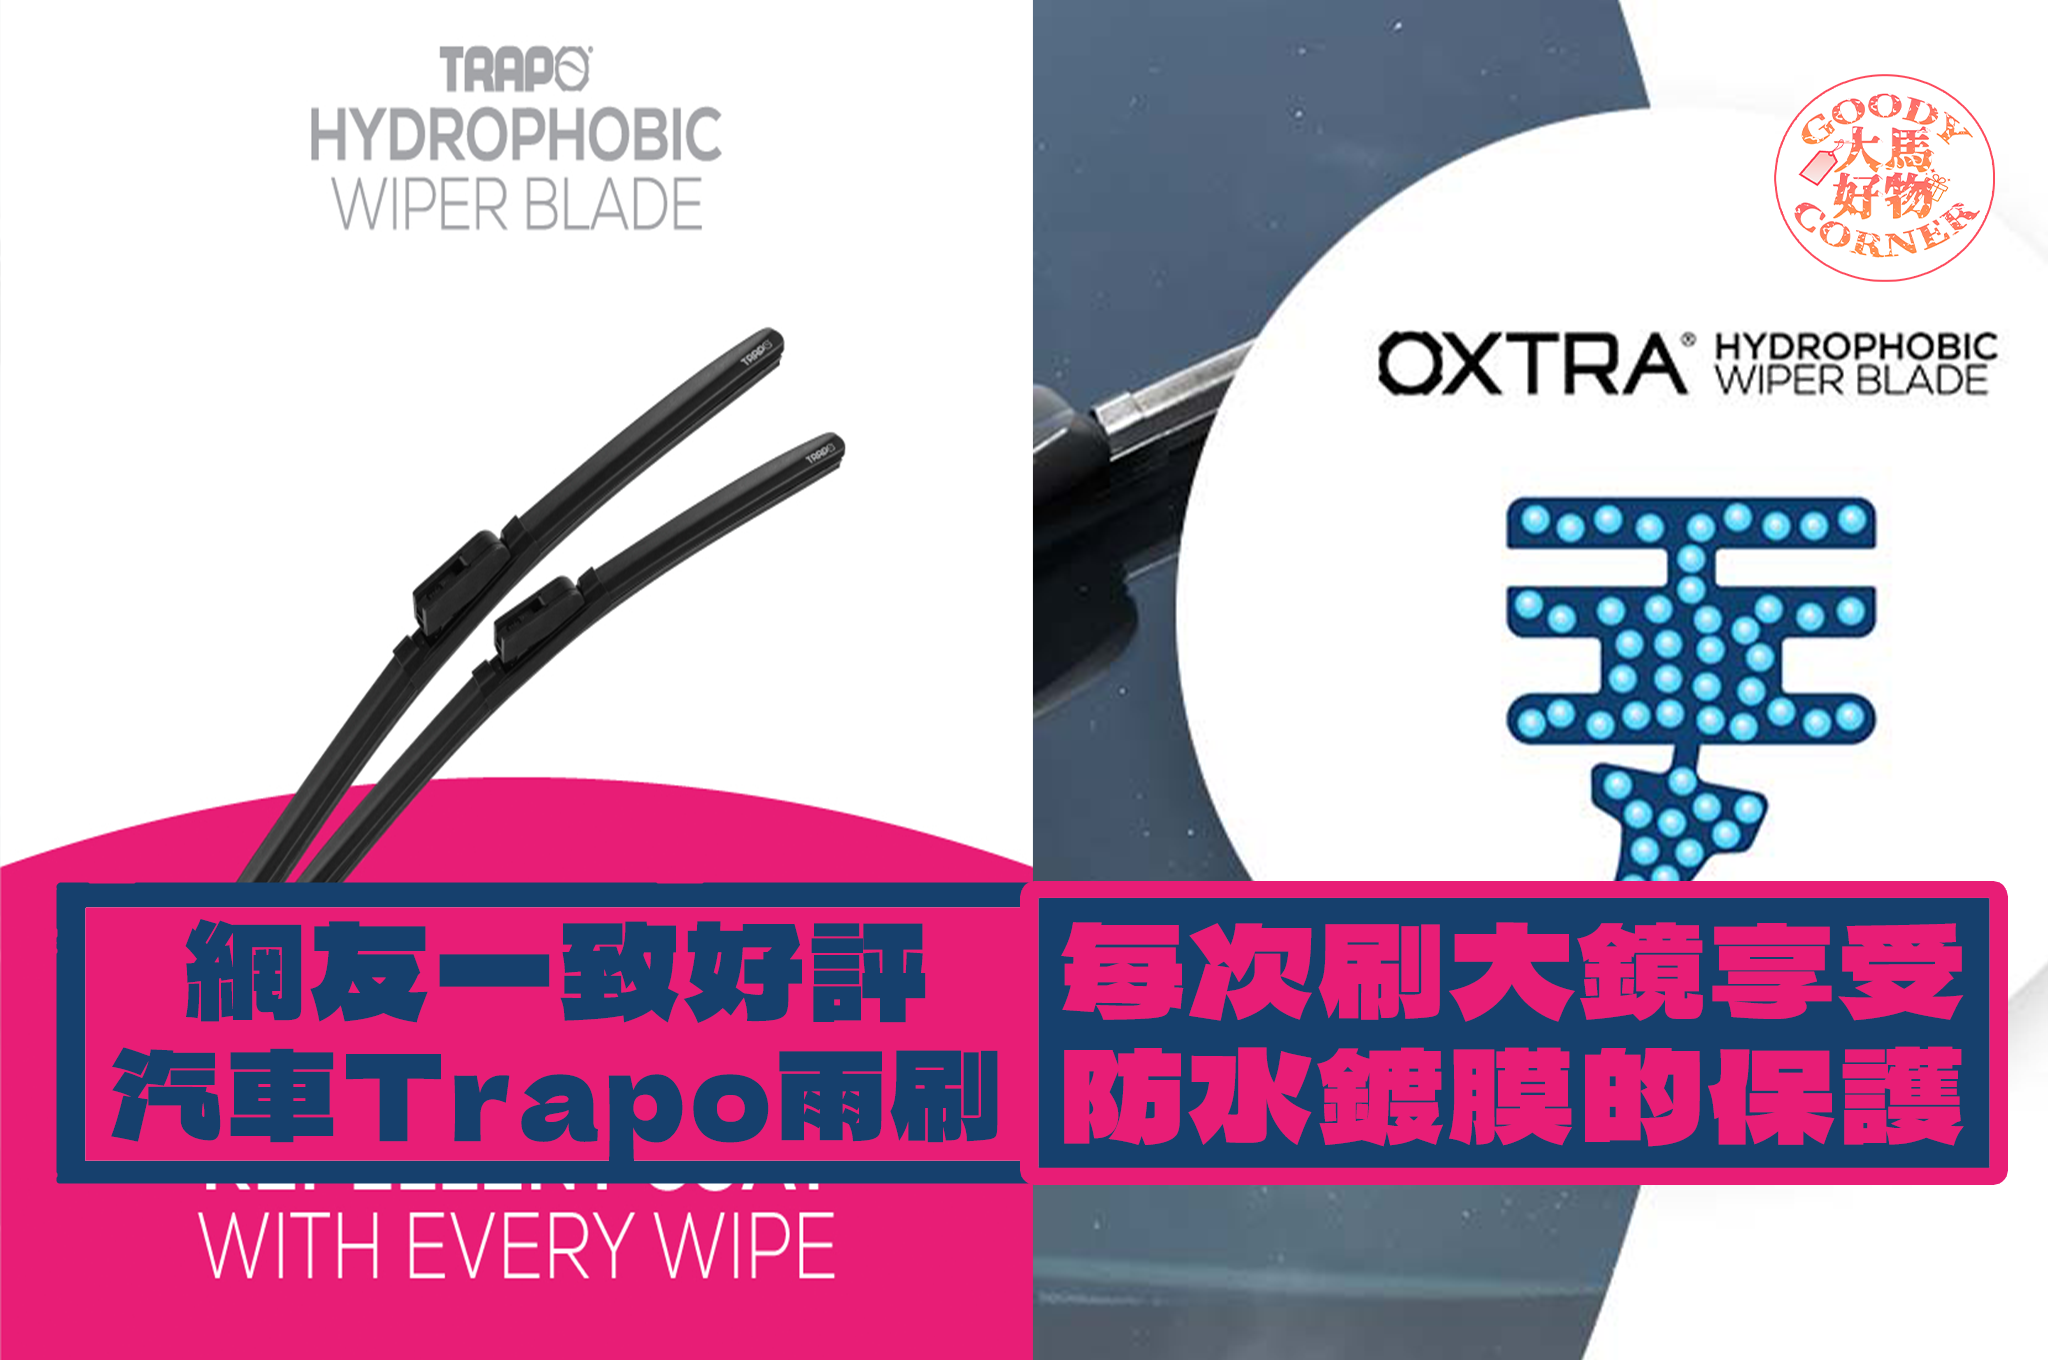 Trapo Hydrophobic Wiper Blade main